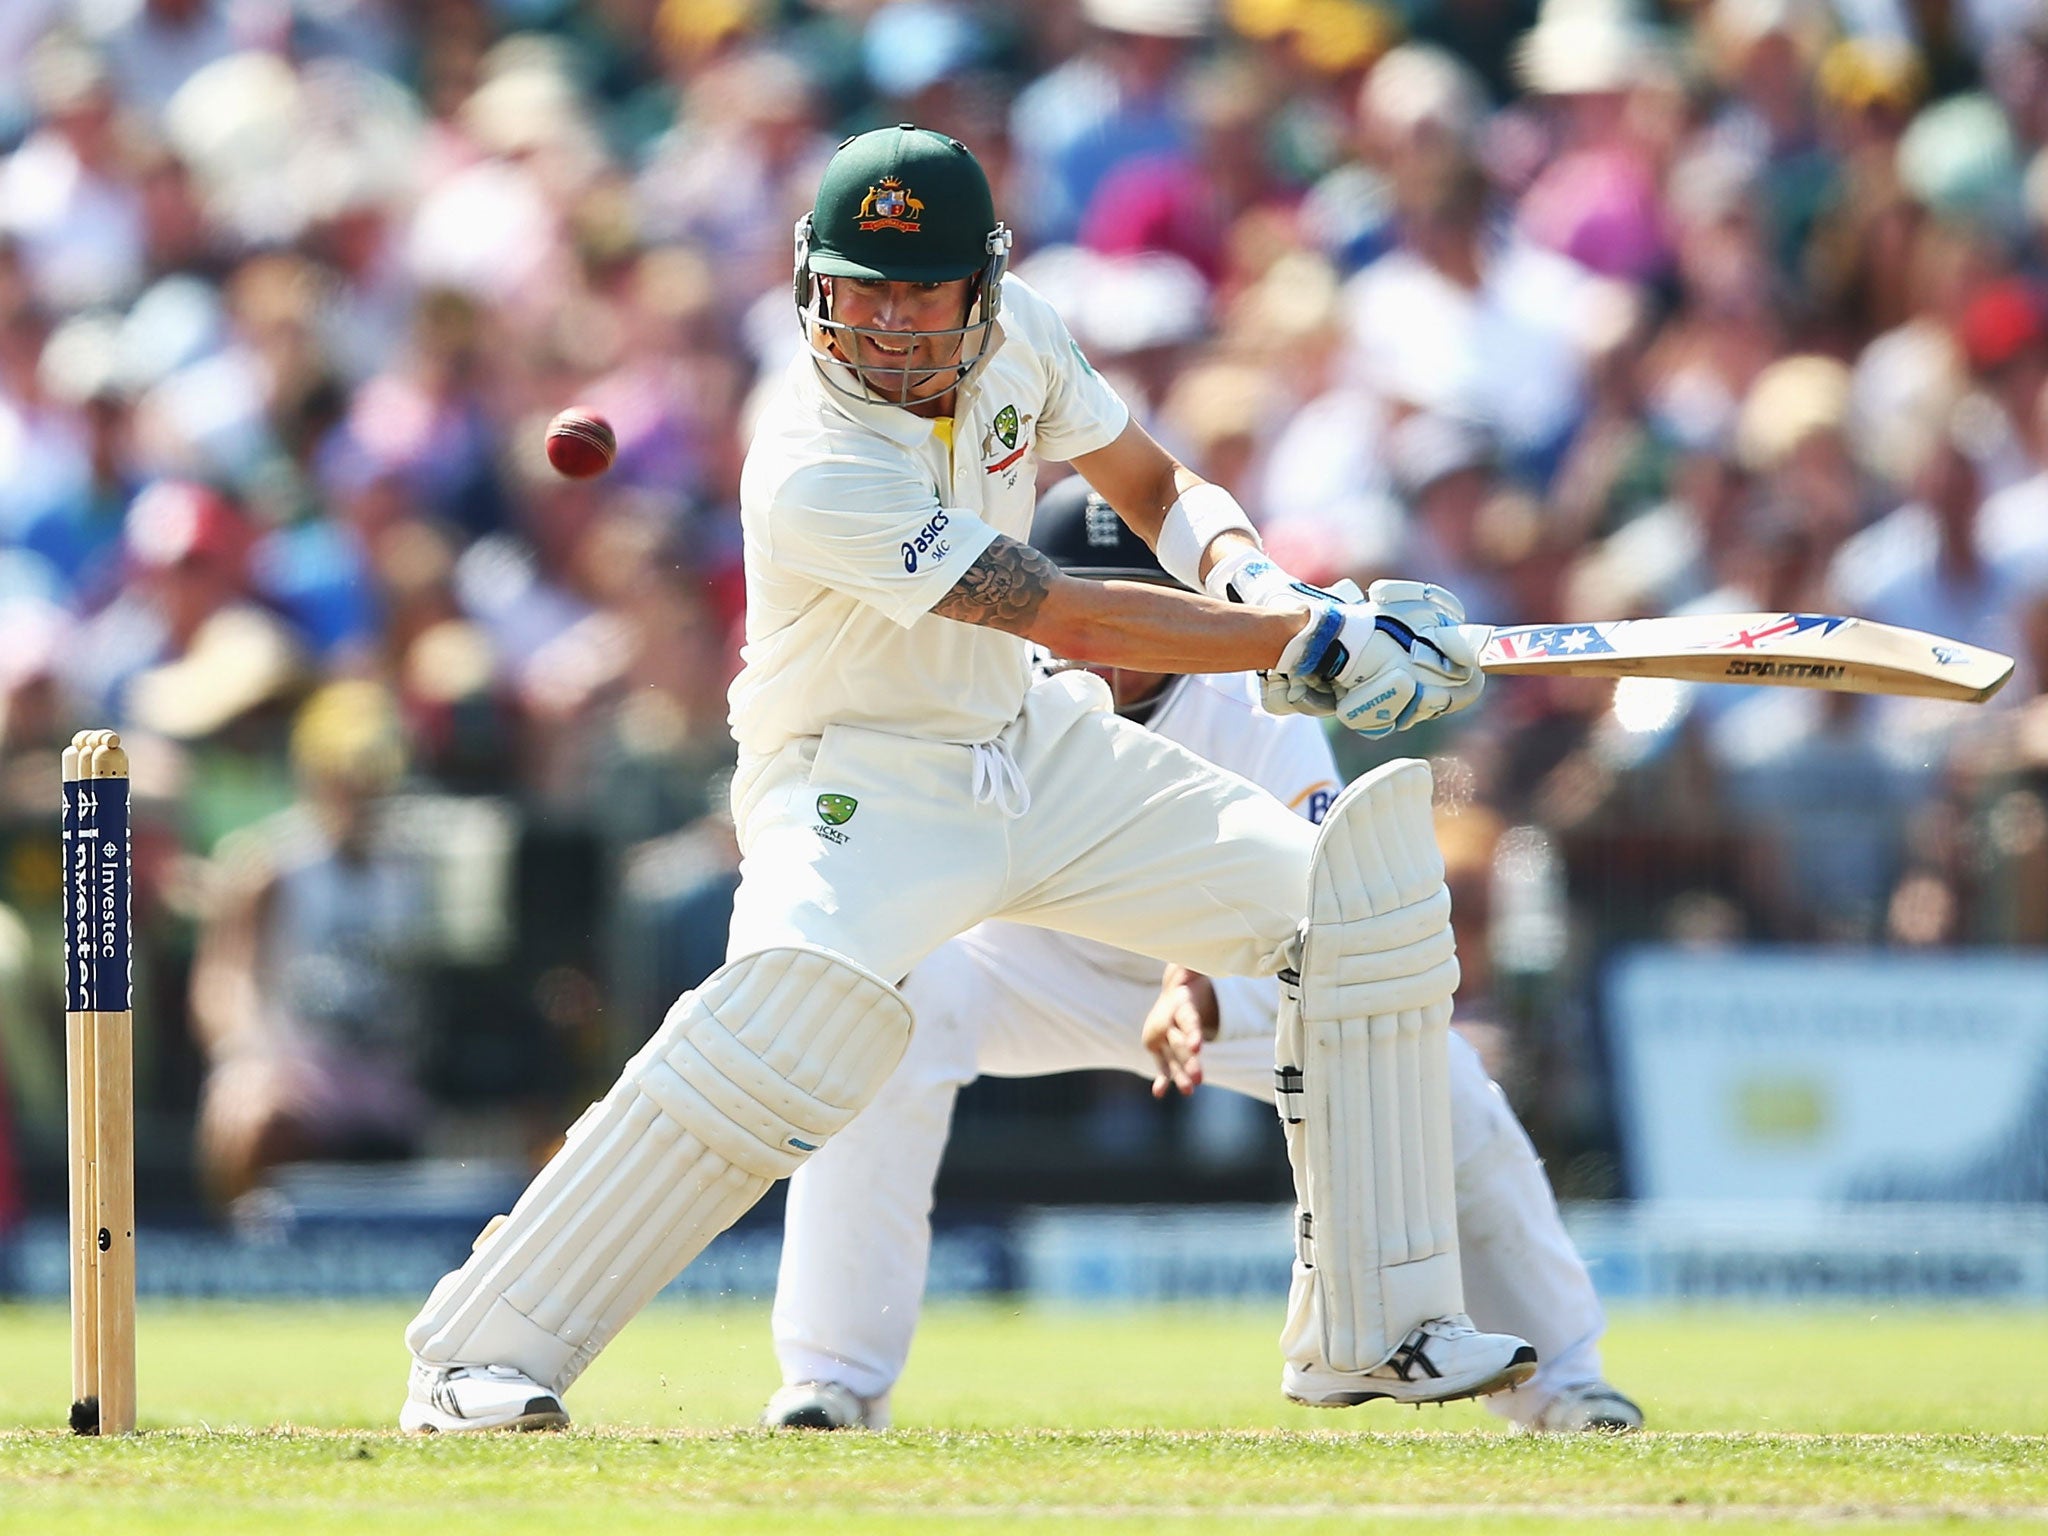 Australia must identify batsmen who can support Michael Clarke